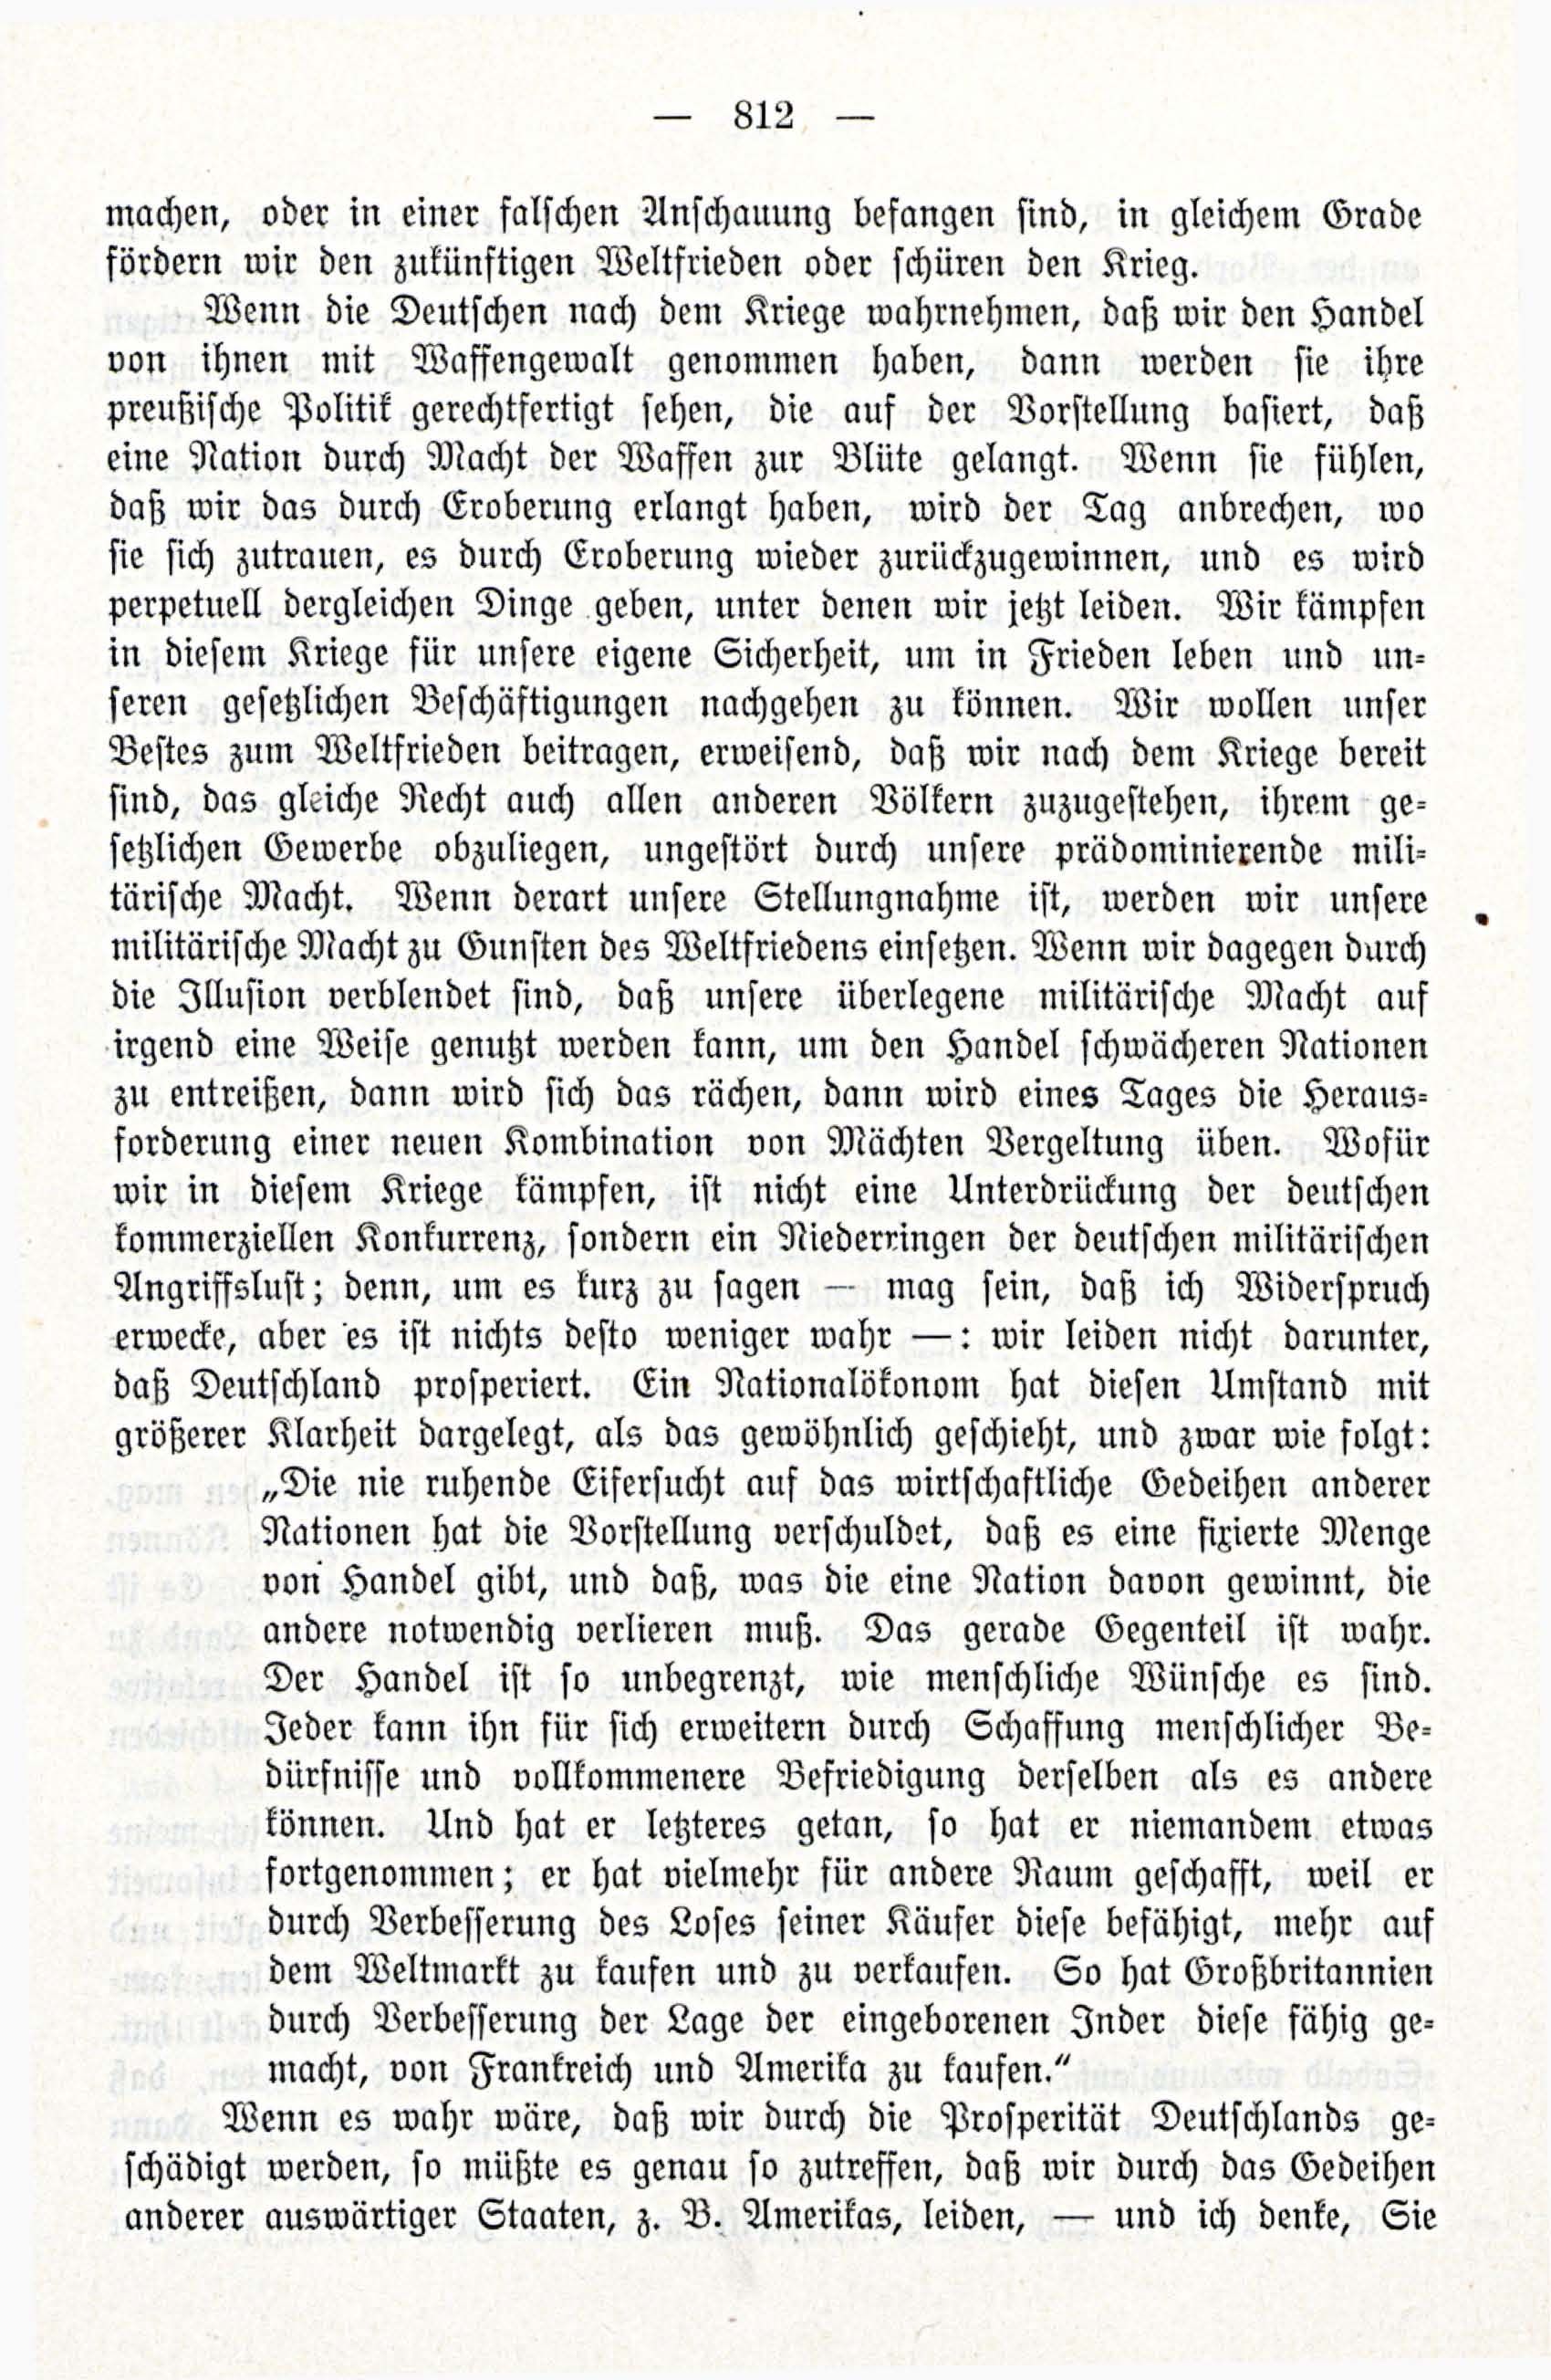 Deutsche Monatsschrift für Russland [3/12] (1914) | 28. (812) Main body of text